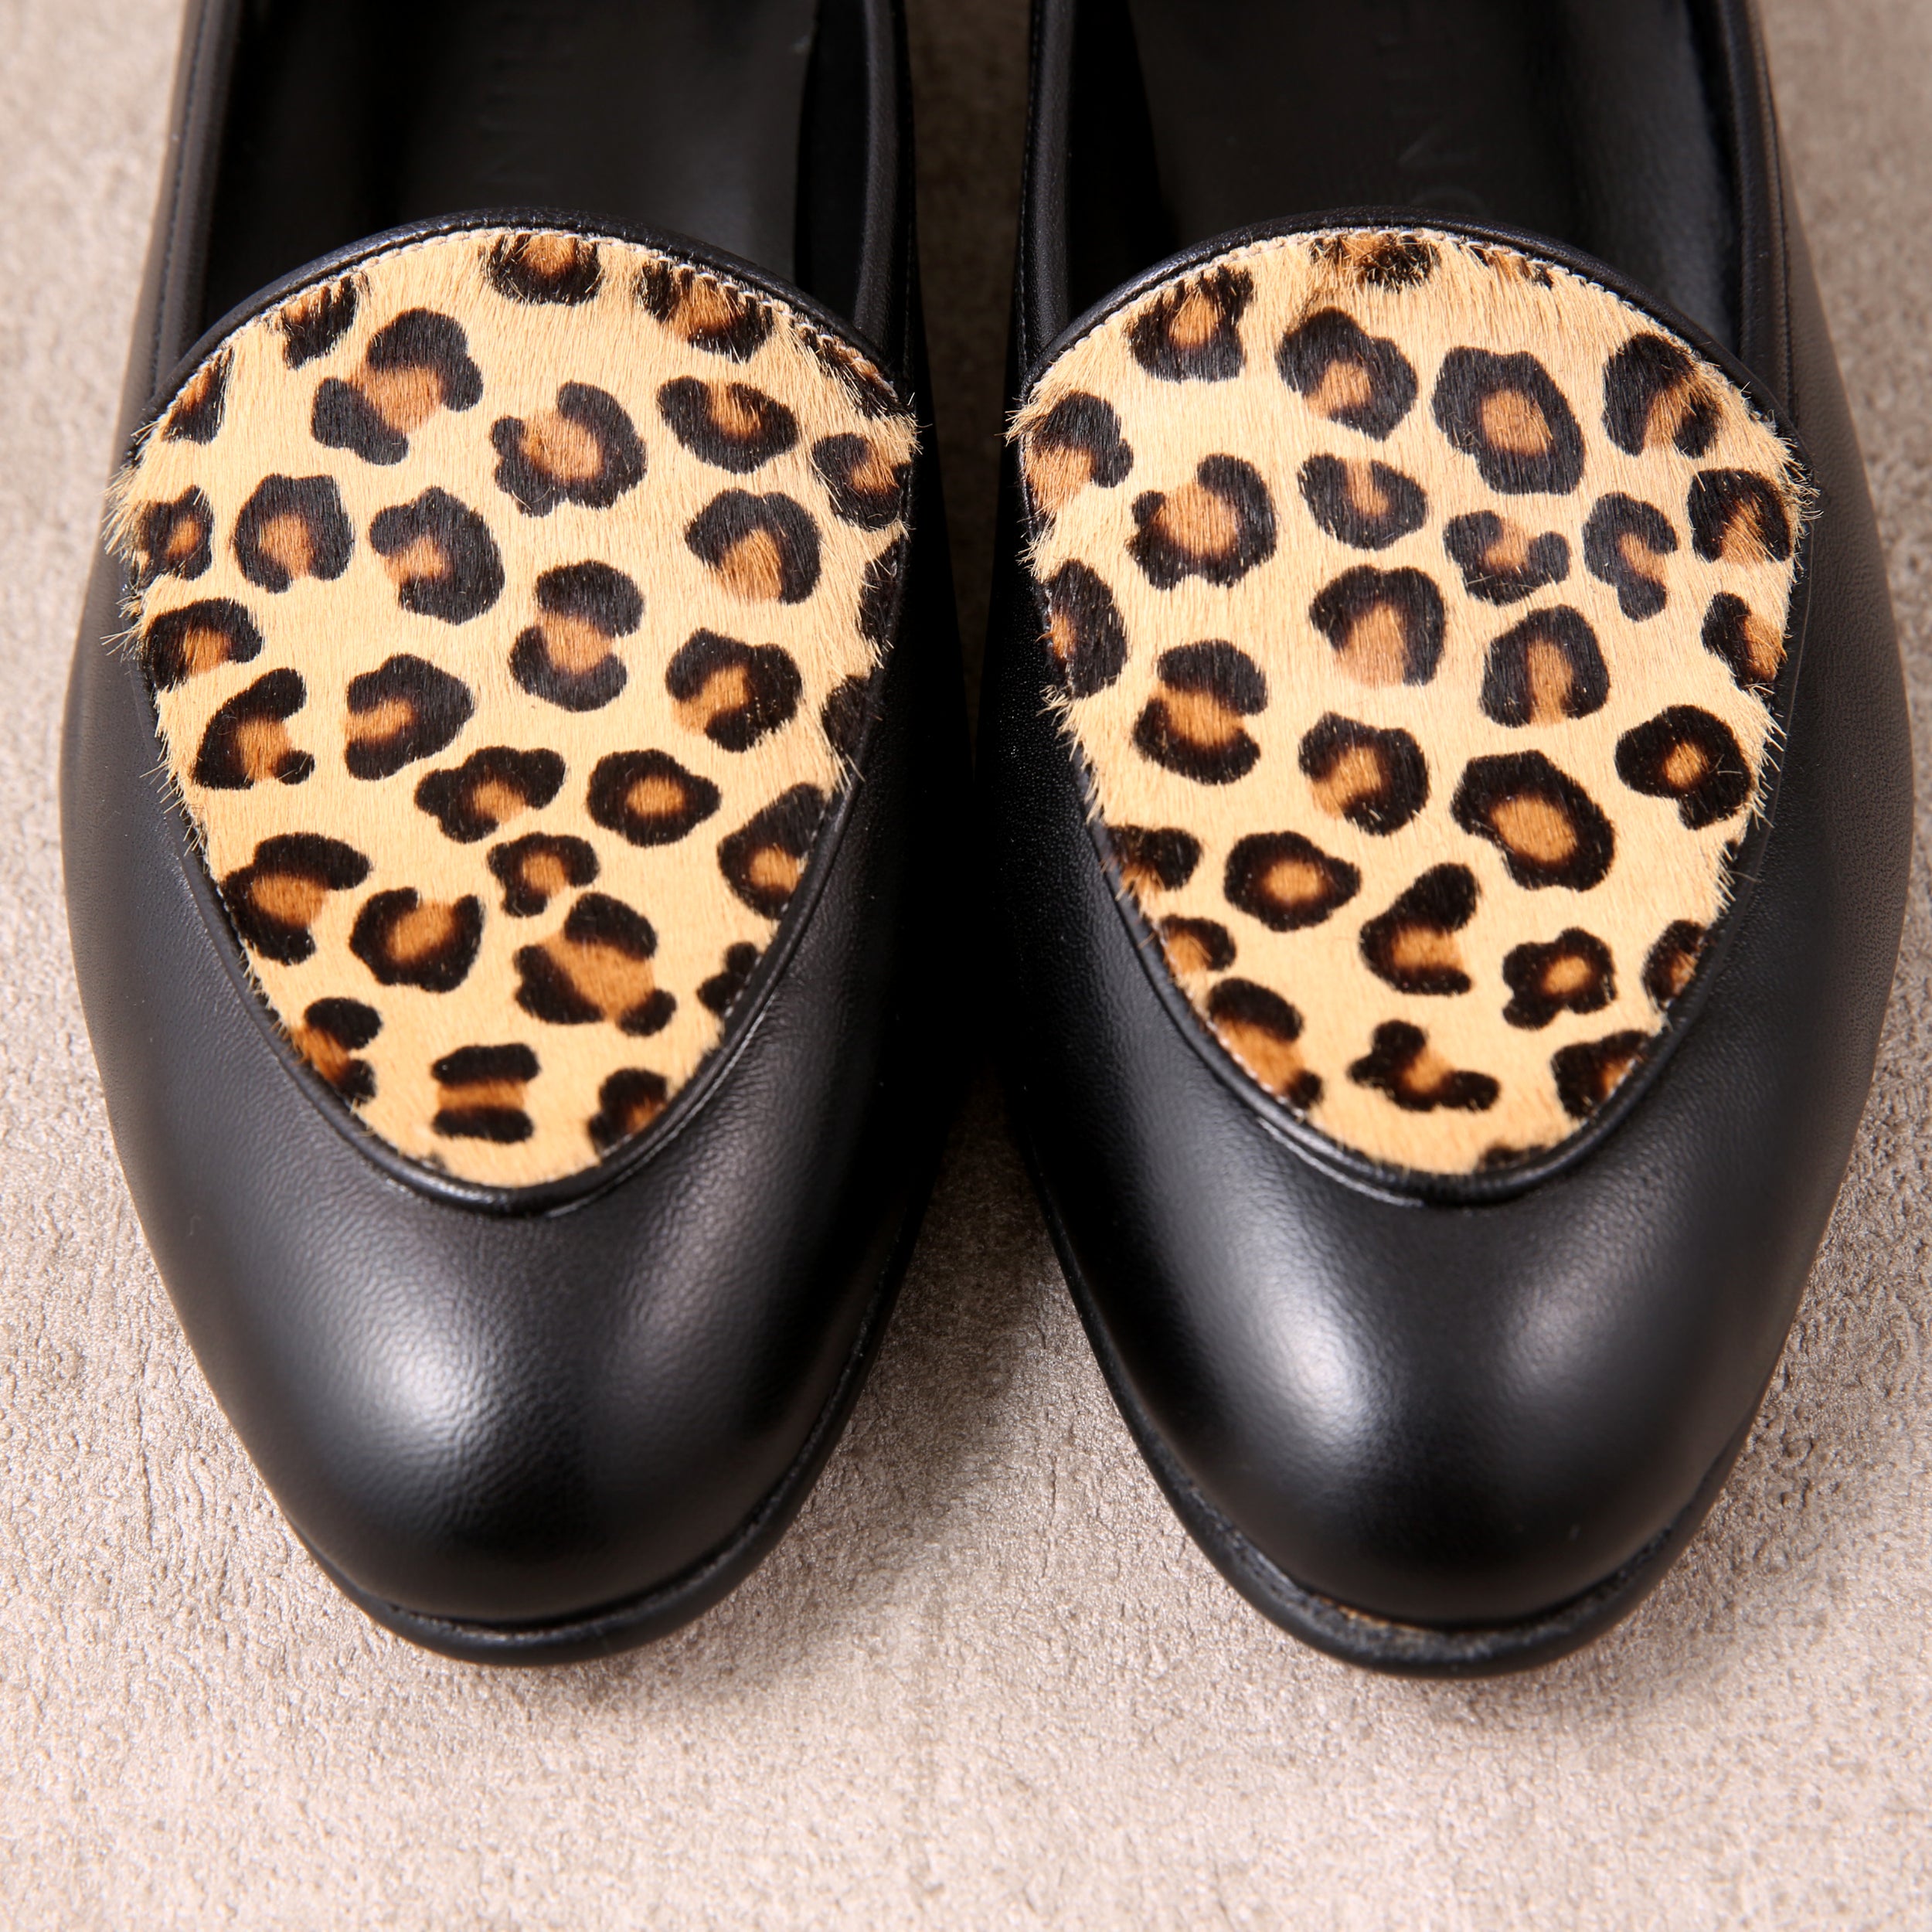 [women's] loafers - leopard-print